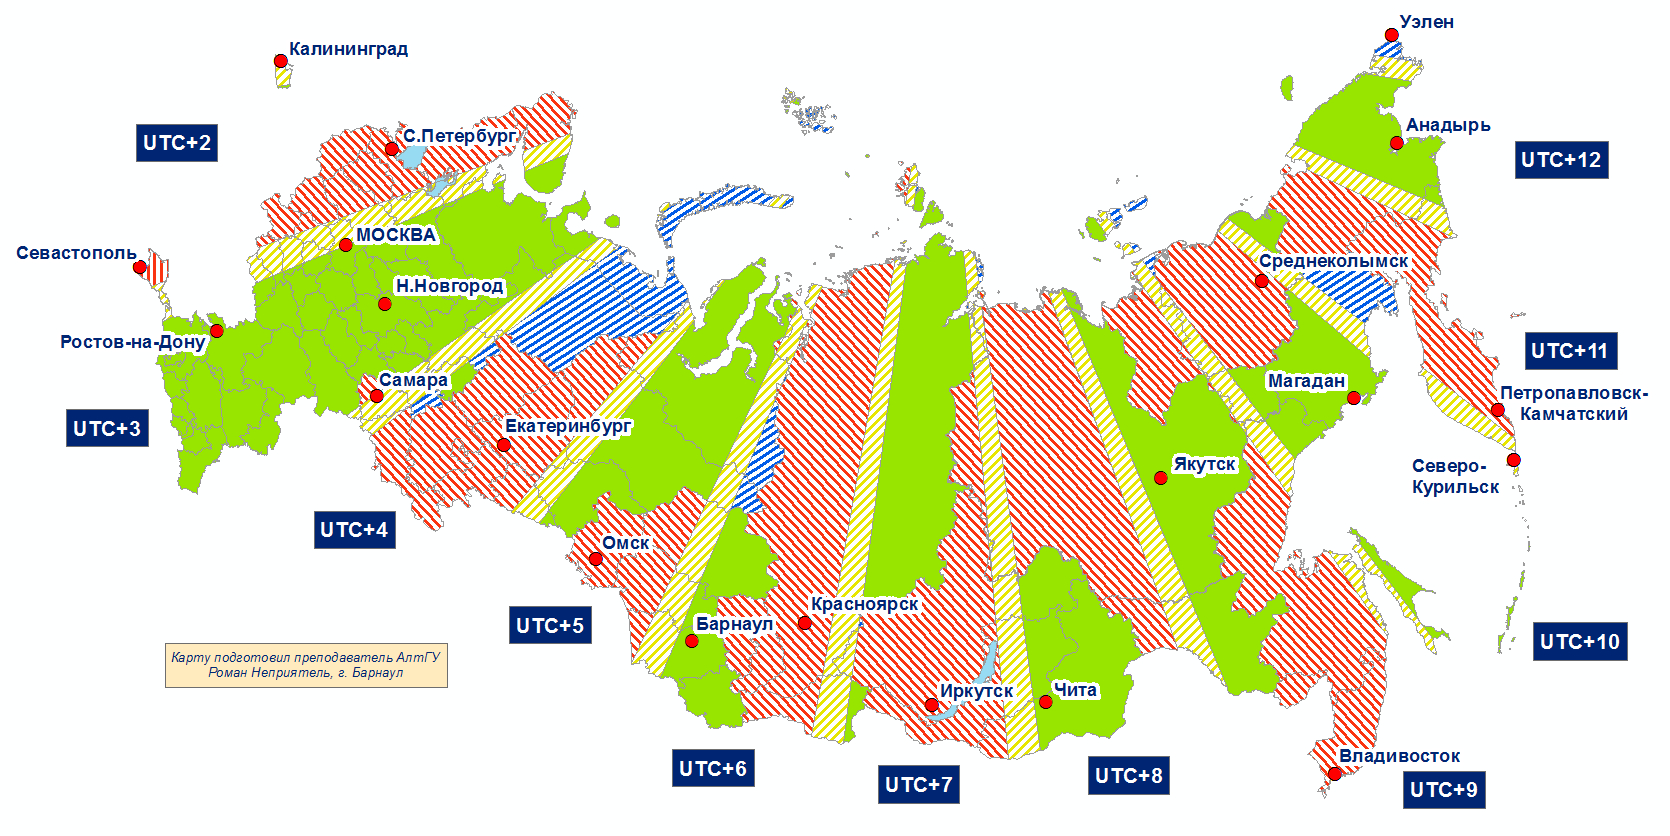 Разница во времени между городами санкт петербургом